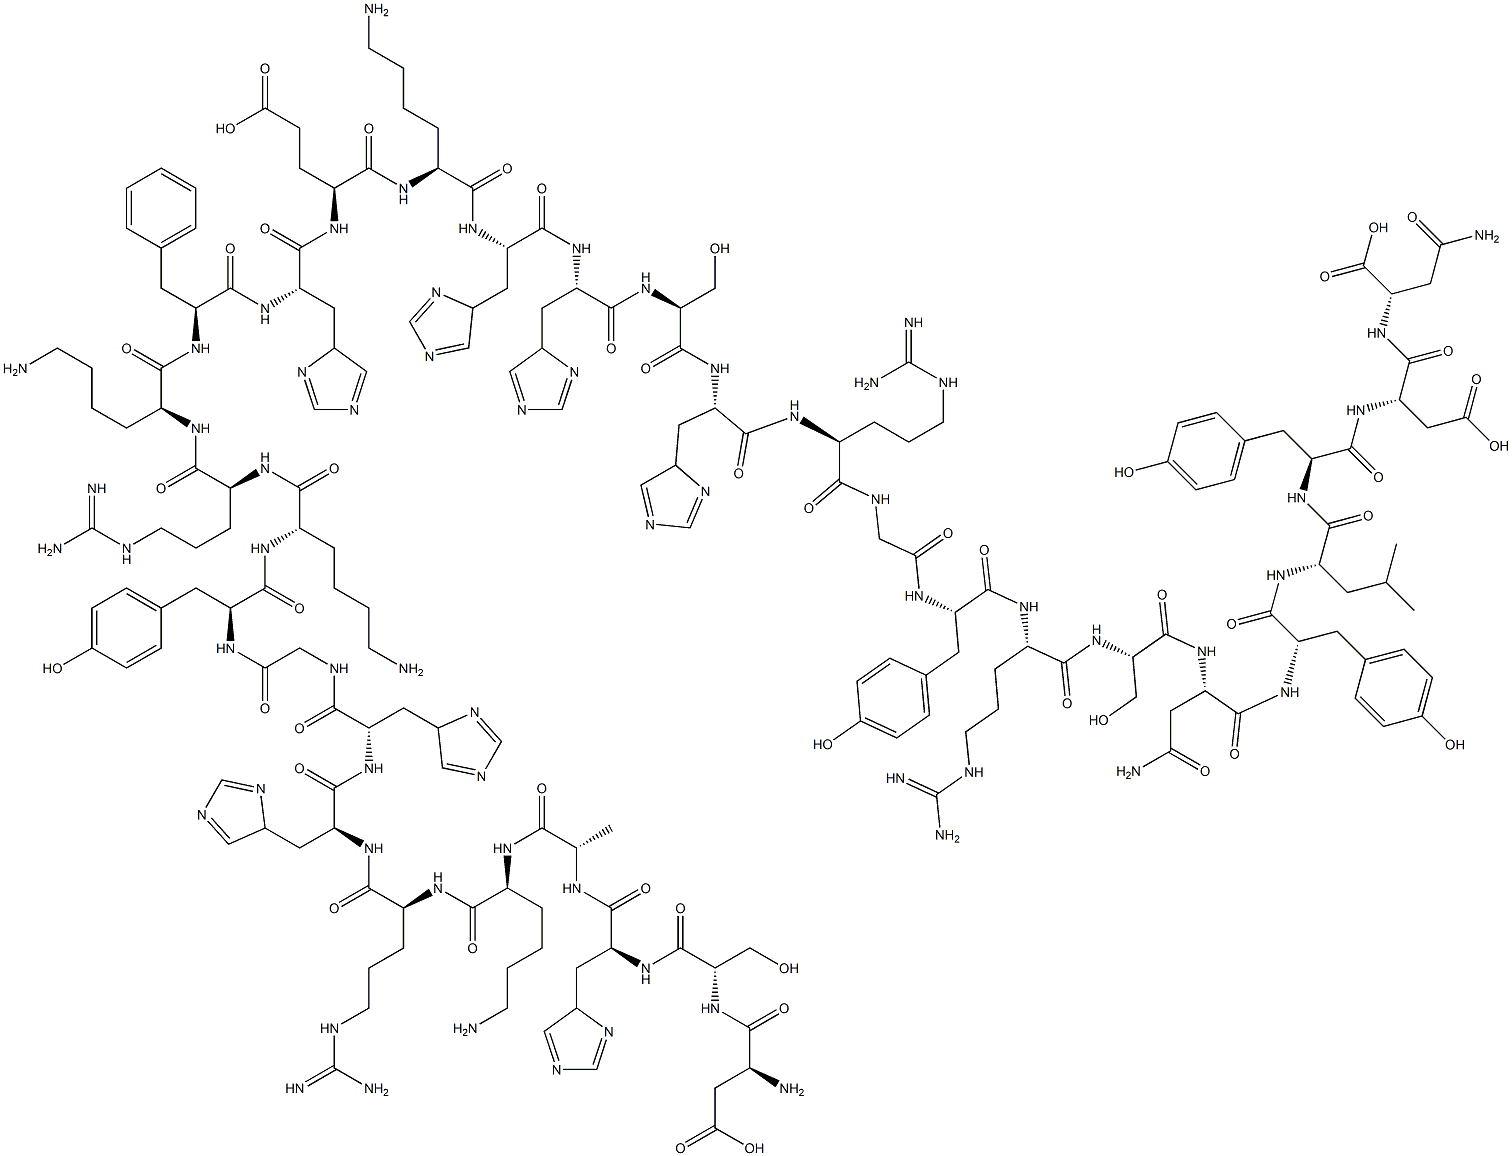 L-Asparagine, L-a-aspartyl-L-seryl-L-histidyl-L-alanyl-L-lysyl-L-arginyl-L-histidyl-L-histidylglycyl-L-tyrosyl-L-lysyl-L-arginyl-L-lysyl-L-phenylalanyl-L-histidyl-L-a-glutamyl-L-lysyl-L-histidyl-L-histidyl-L-seryl-L-histidyl-L-arginylglycyl-L-tyrosyl-L-arginyl-L-seryl-L-asparaginyl-L-tyrosyl-L-leucyl-L-tyrosyl-L-a-aspartyl-|